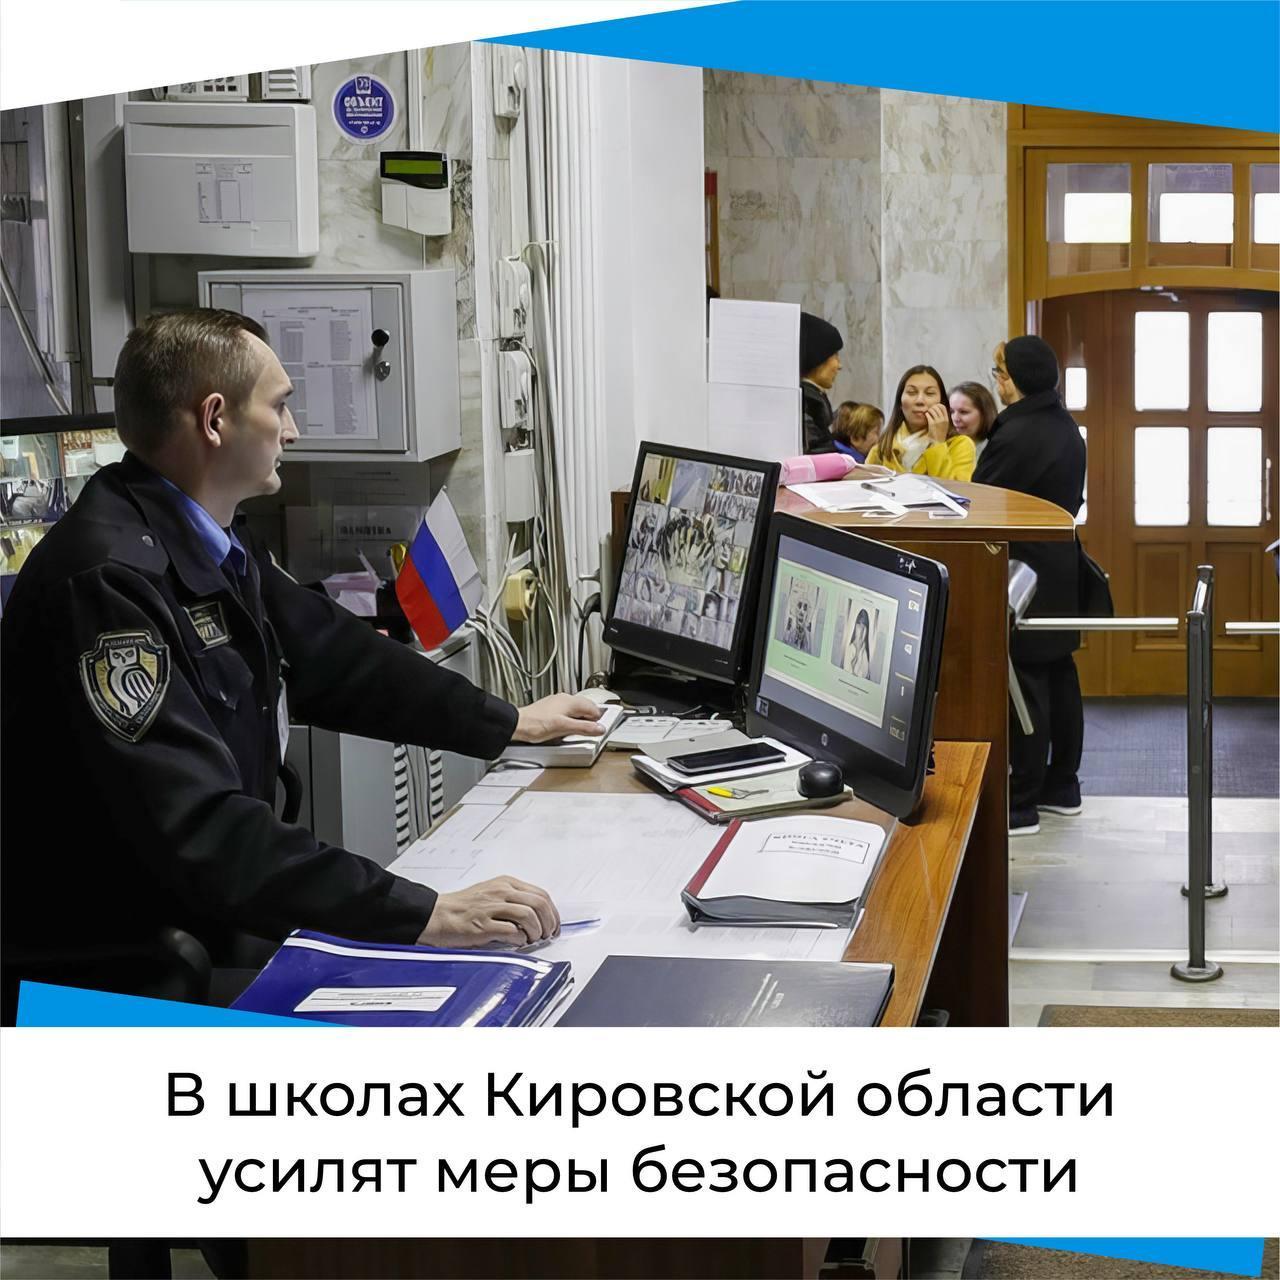 В школах Кировской области усилят меры безопасности.